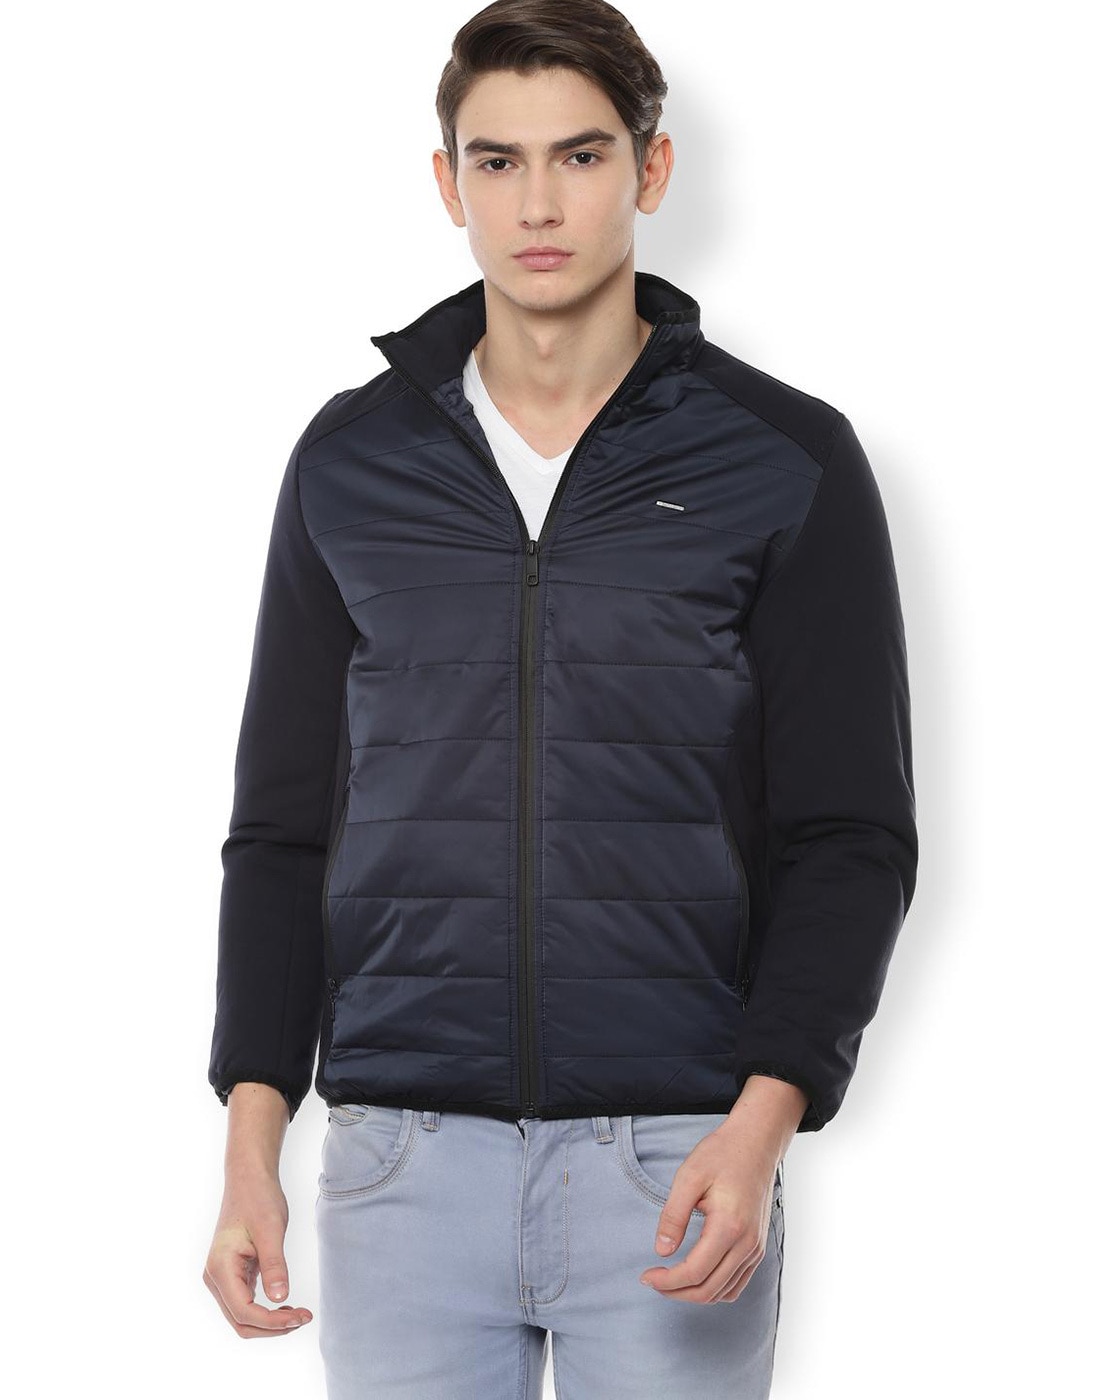 Buy Navy Jackets \u0026 Coats for Men by VAN 